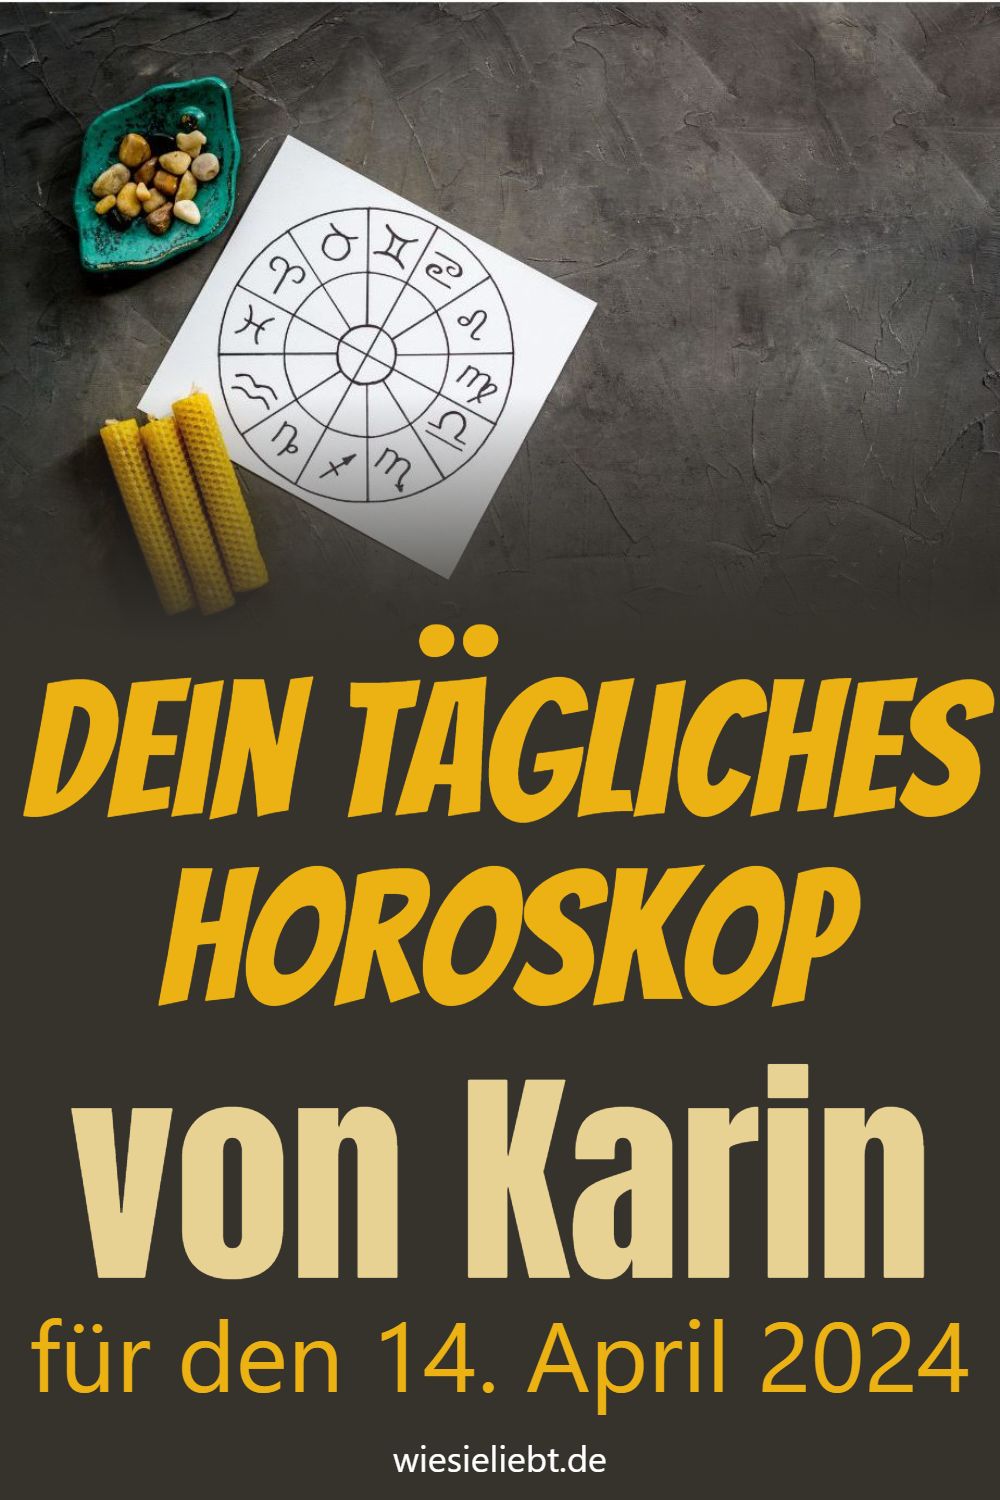 Dein tägliches Horoskop von Karin für den 14. April 2024